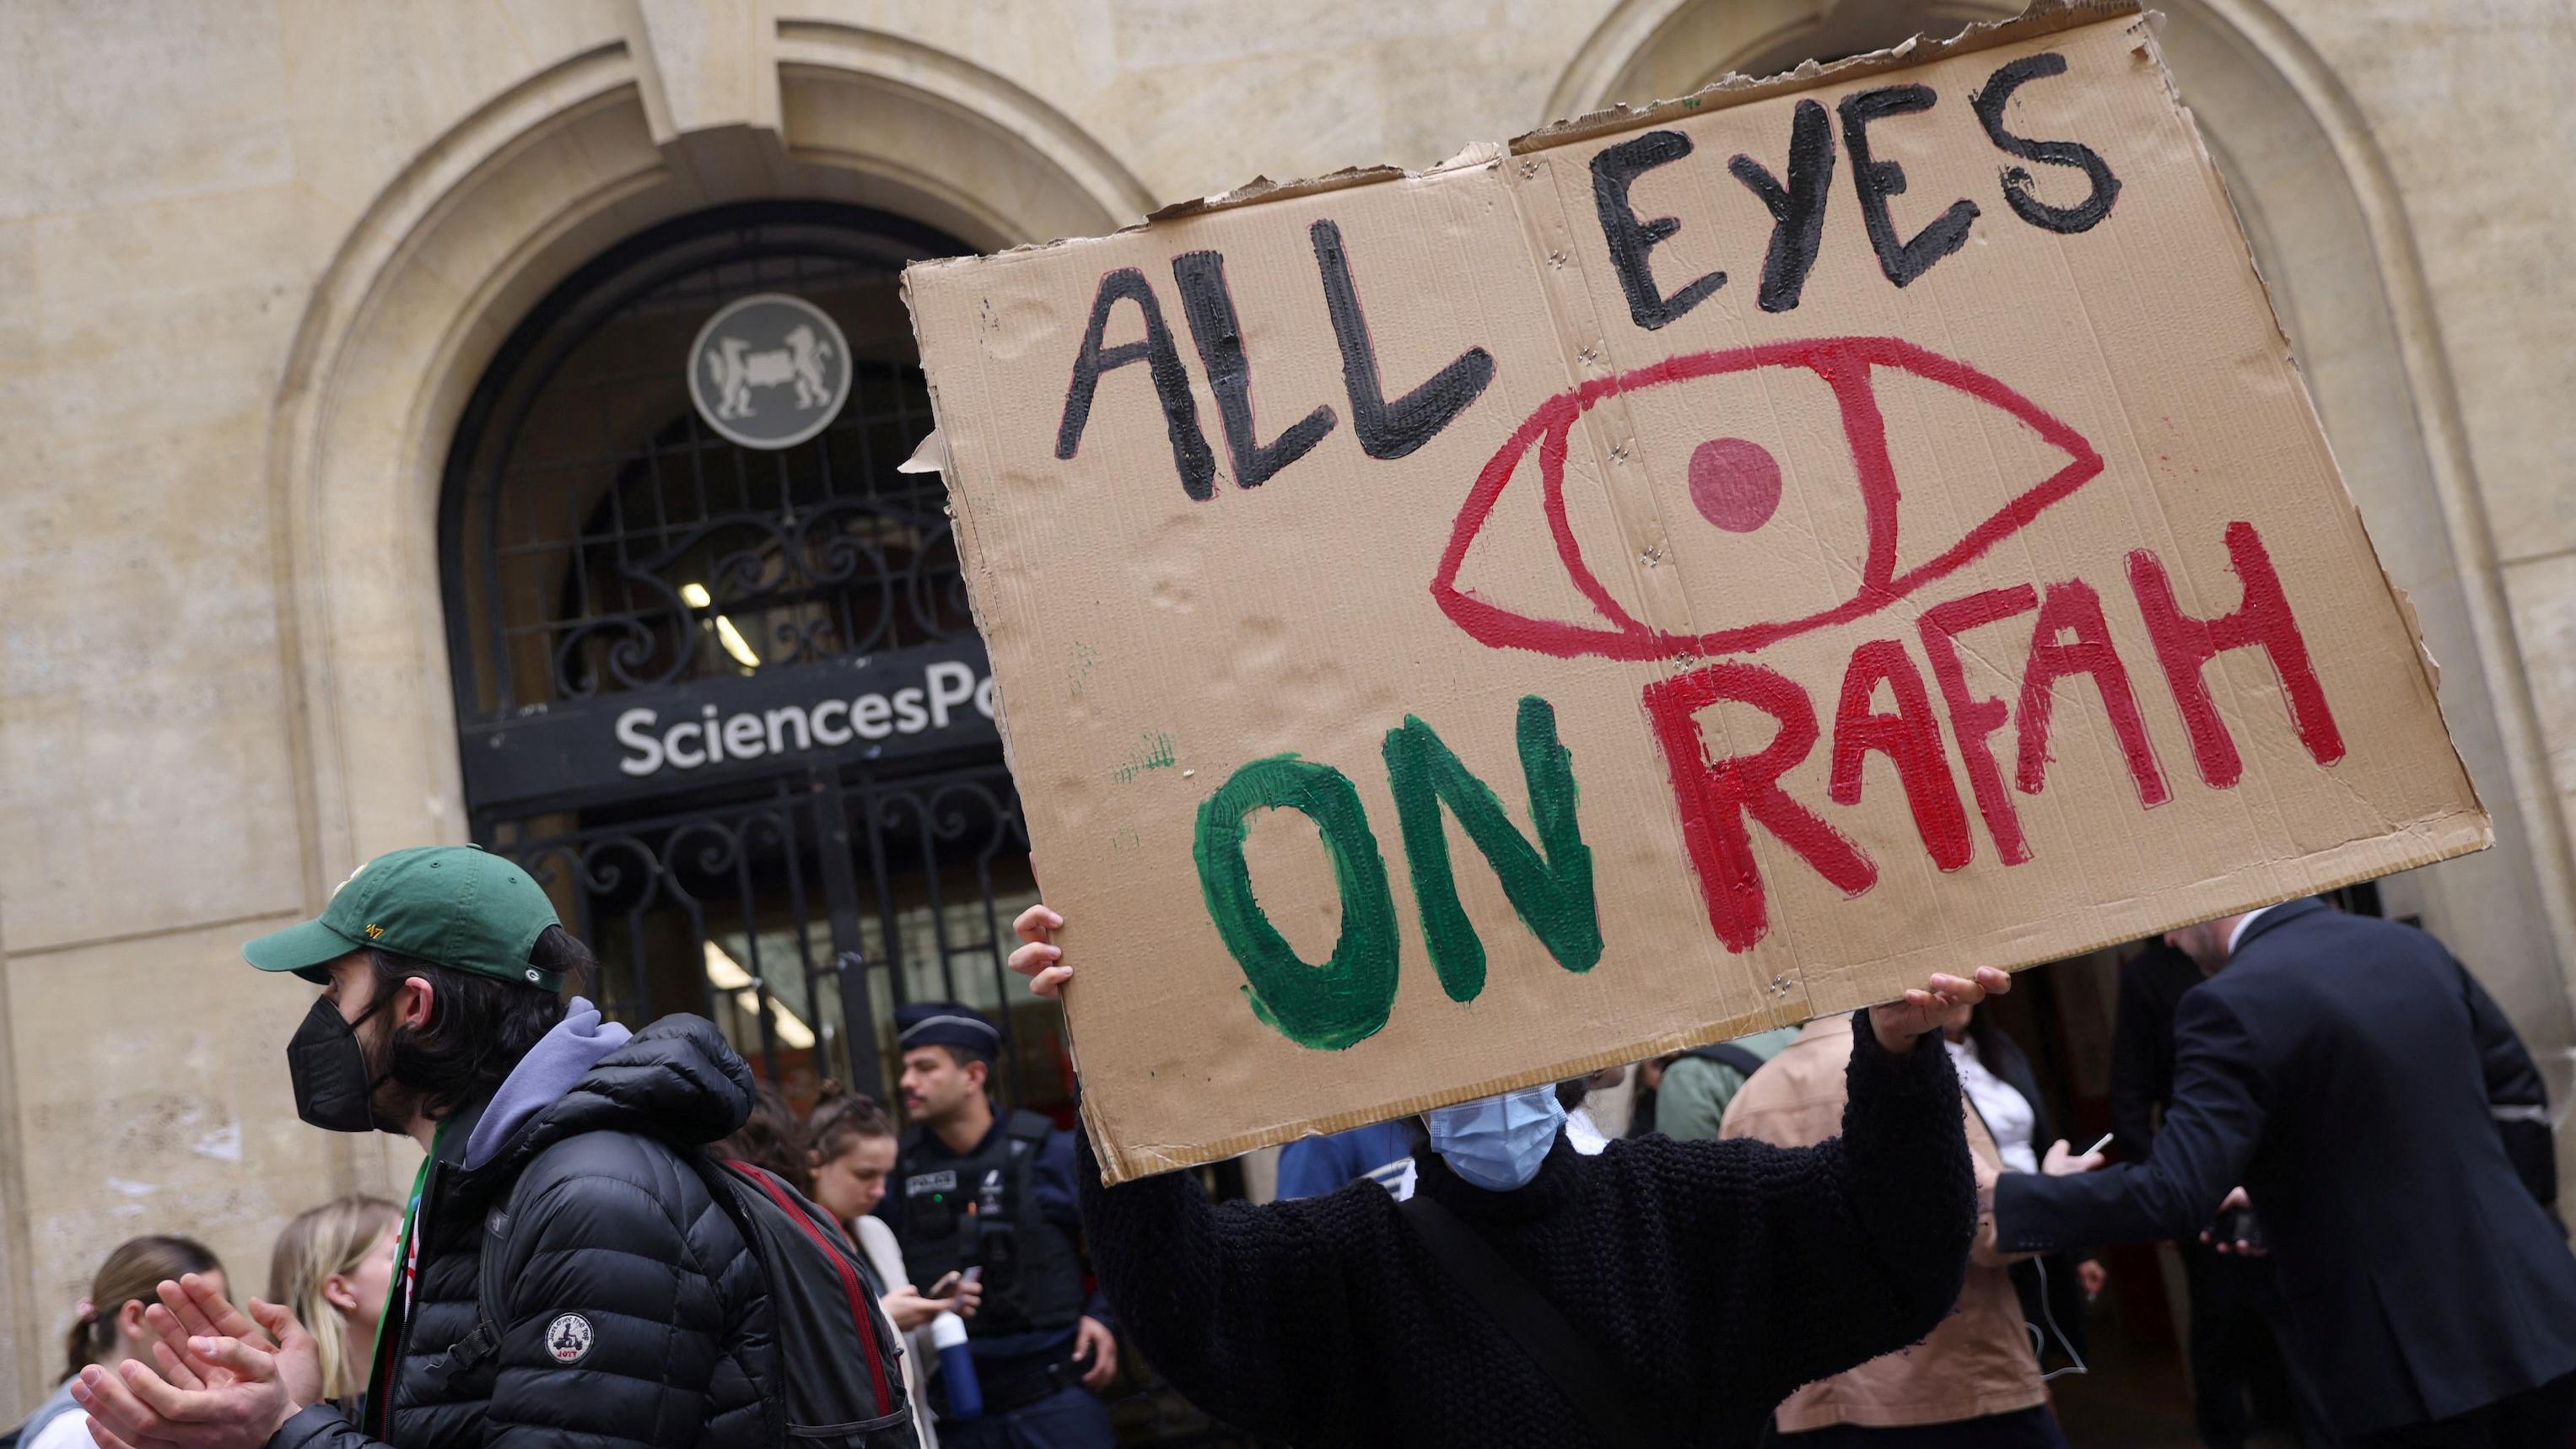 Estudiantes ocupan la calle frente al edificio de la Universidad Sciences Po de París, con un cartel que dice "Todos los ojos puestos en Rafah".